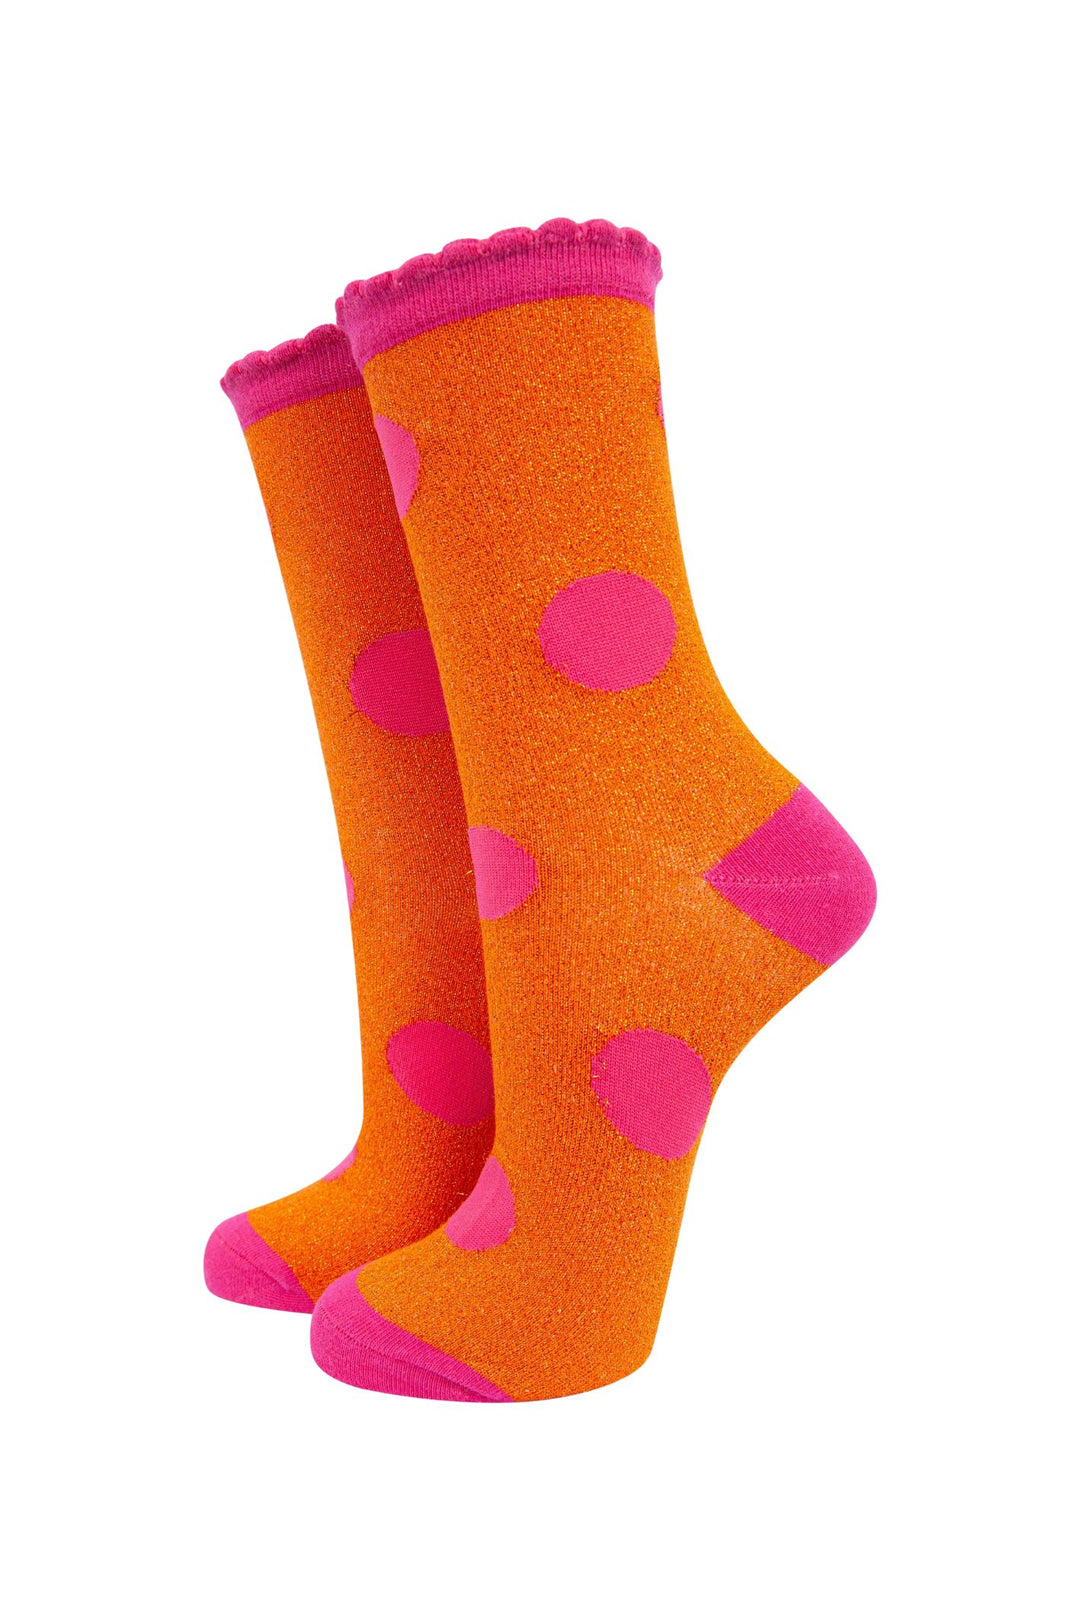 Hot Pink & Orange Metallic Large Polka Dot Socks